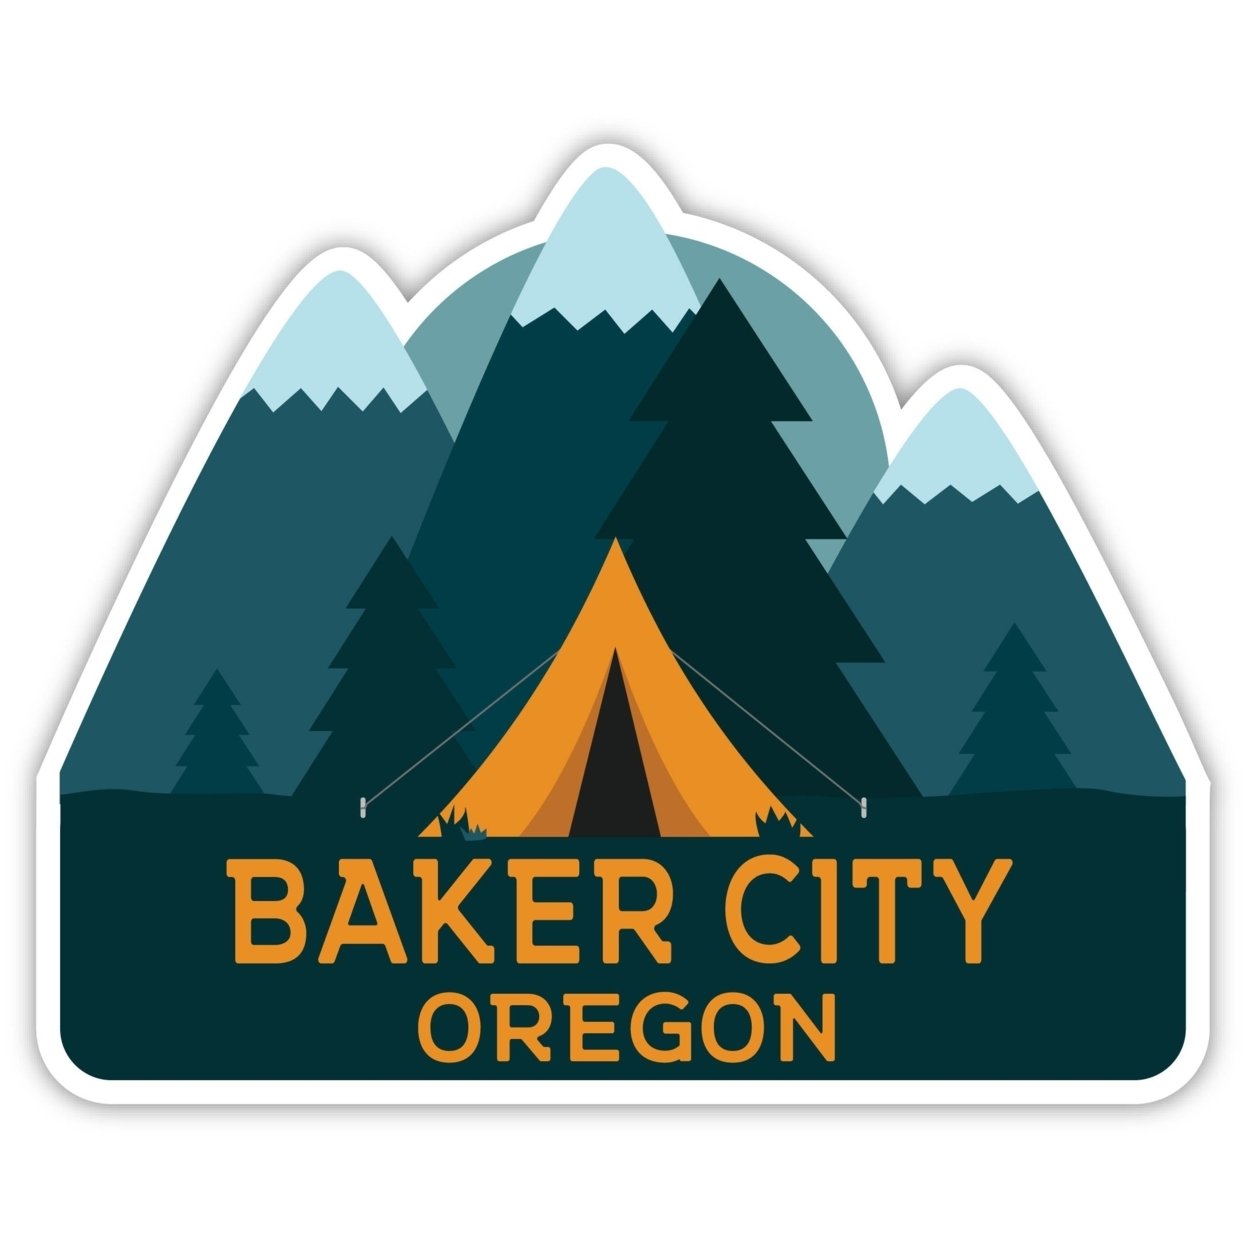 Baker City Oregon Souvenir Decorative Stickers (Choose Theme And Size) - Single Unit, 2-Inch, Tent